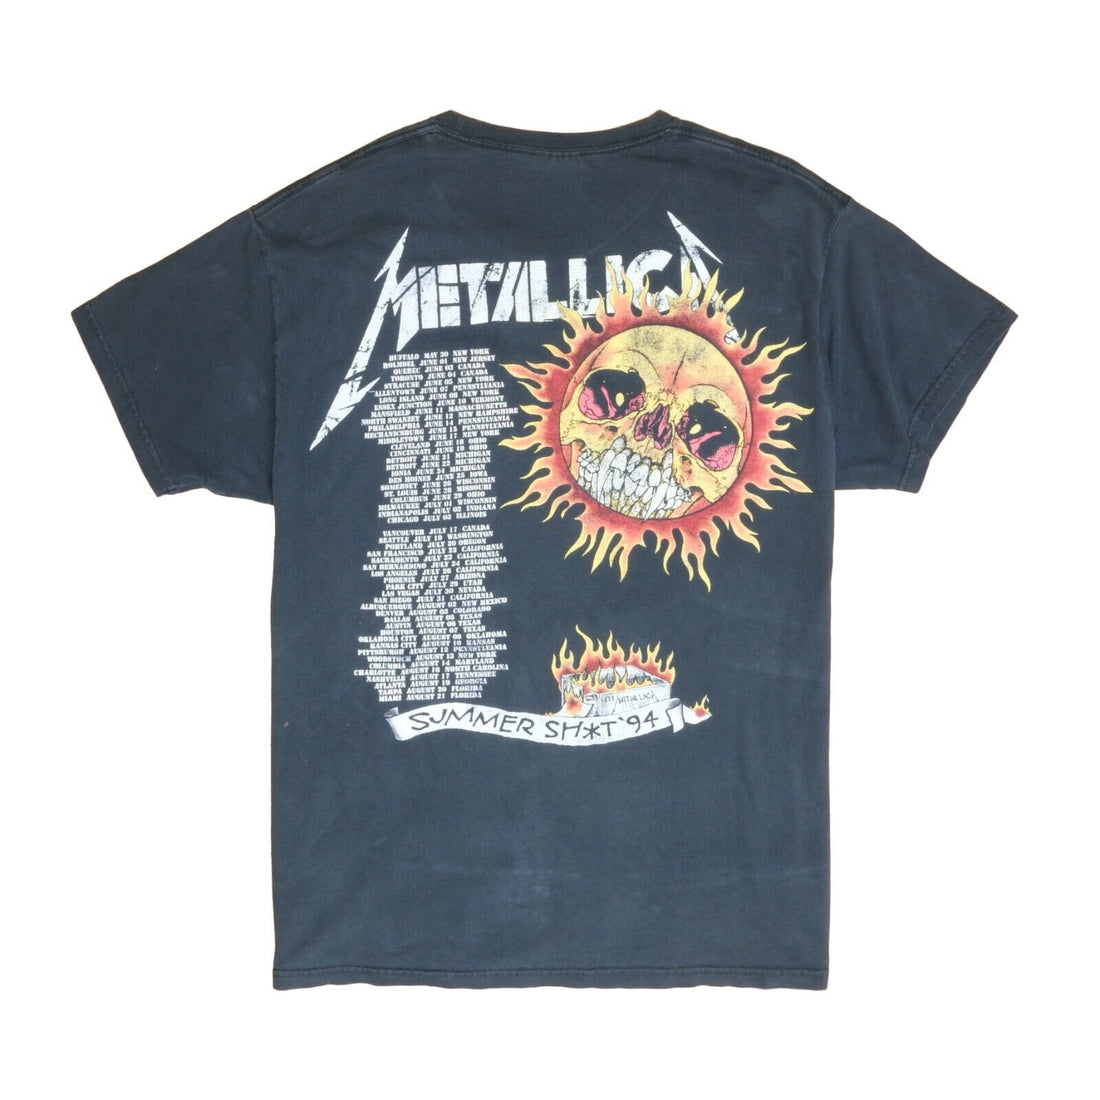 Vintage Metallica Summer Sh*t Tour T-Shirt Size Large Pushead Band Tee